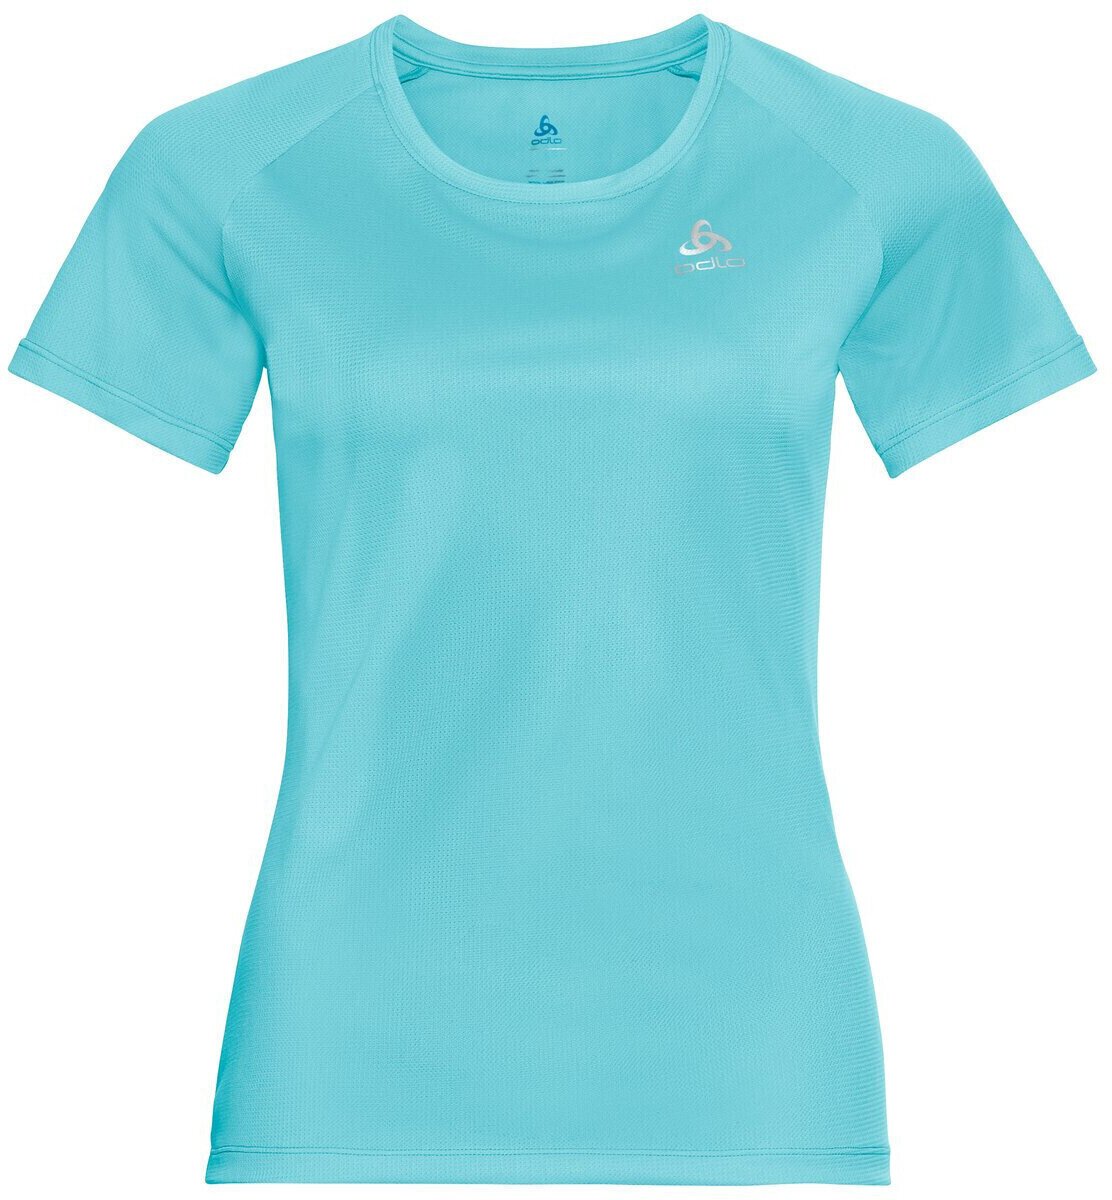 Běžecké tričko s krátkým rukávem
 Odlo Element Light T-Shirt Blue Radiance S Běžecké tričko s krátkým rukávem